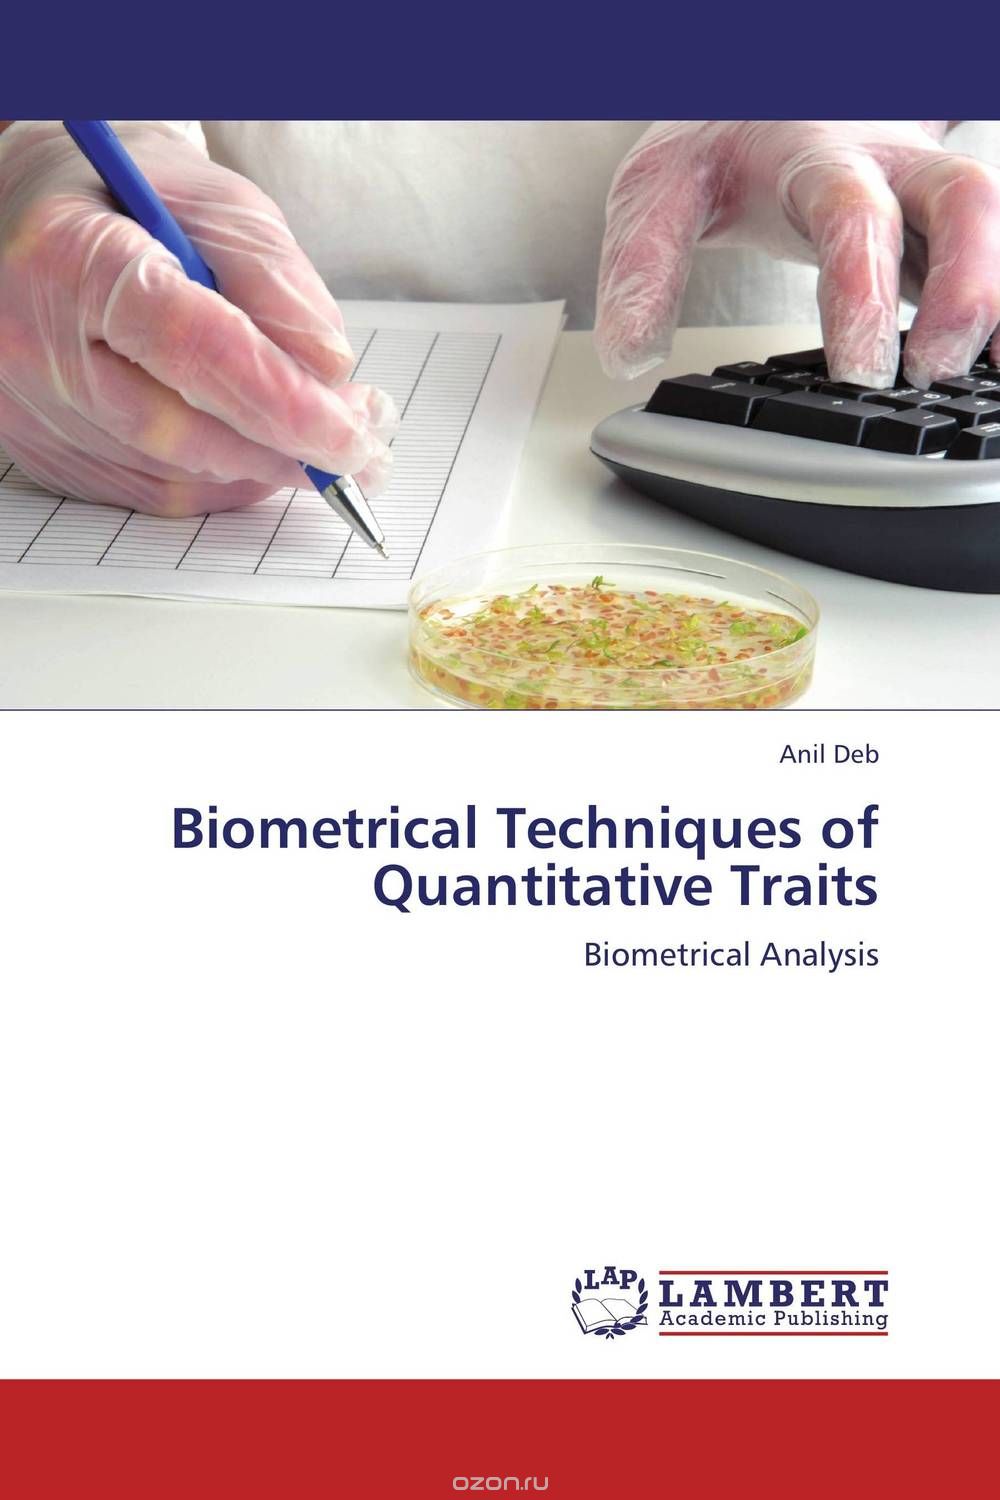 Скачать книгу "Biometrical Techniques of Quantitative Traits"